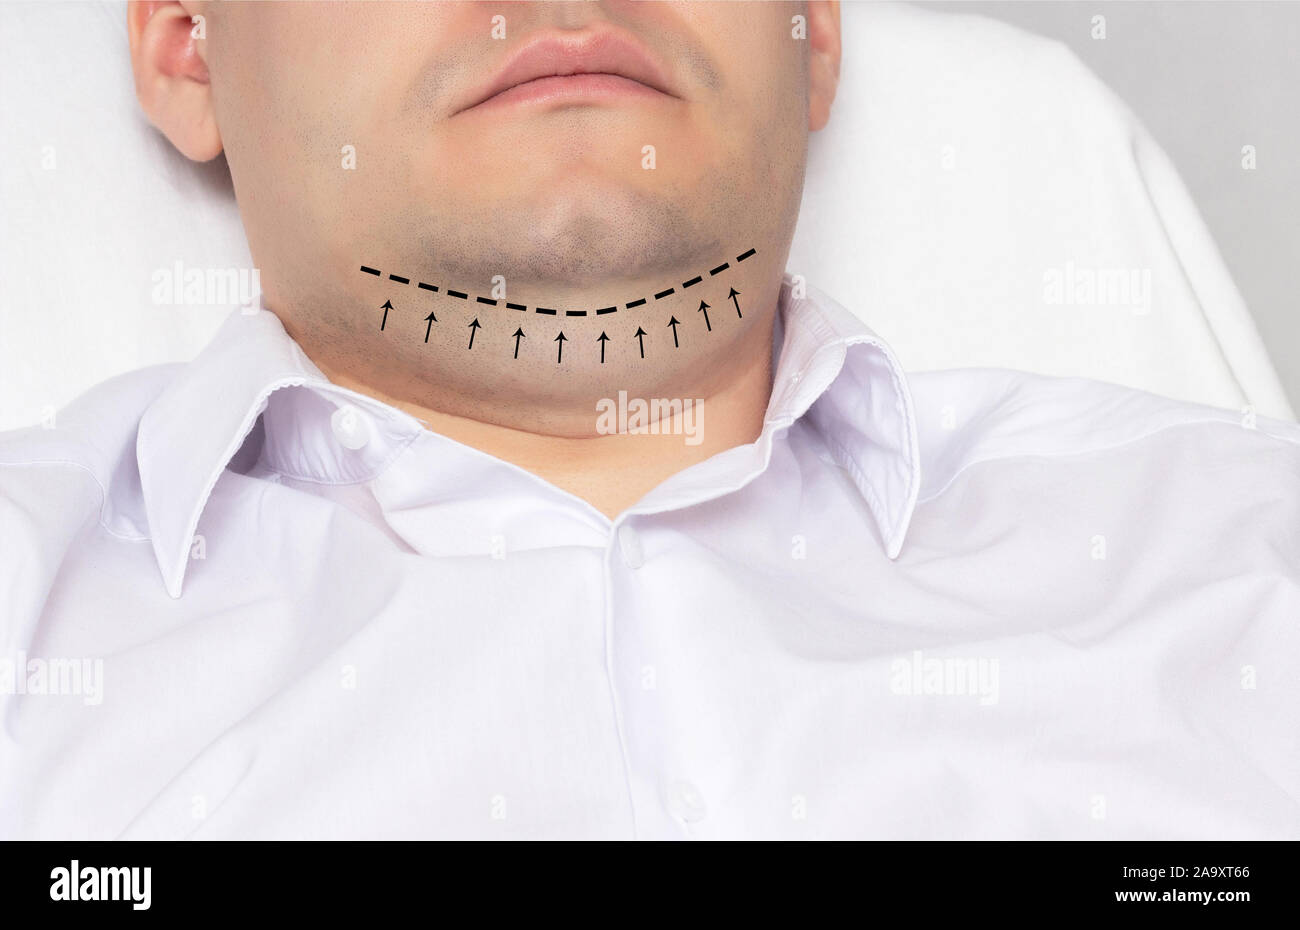 Ein Mann mit einem doppelkinn im Büro eines plastischen Chirurgen. Die Kennzeichnung mit einem schwarzen Strich-Punkt Markierung für doppelkinn Ausbau, anaplasty Stockfoto